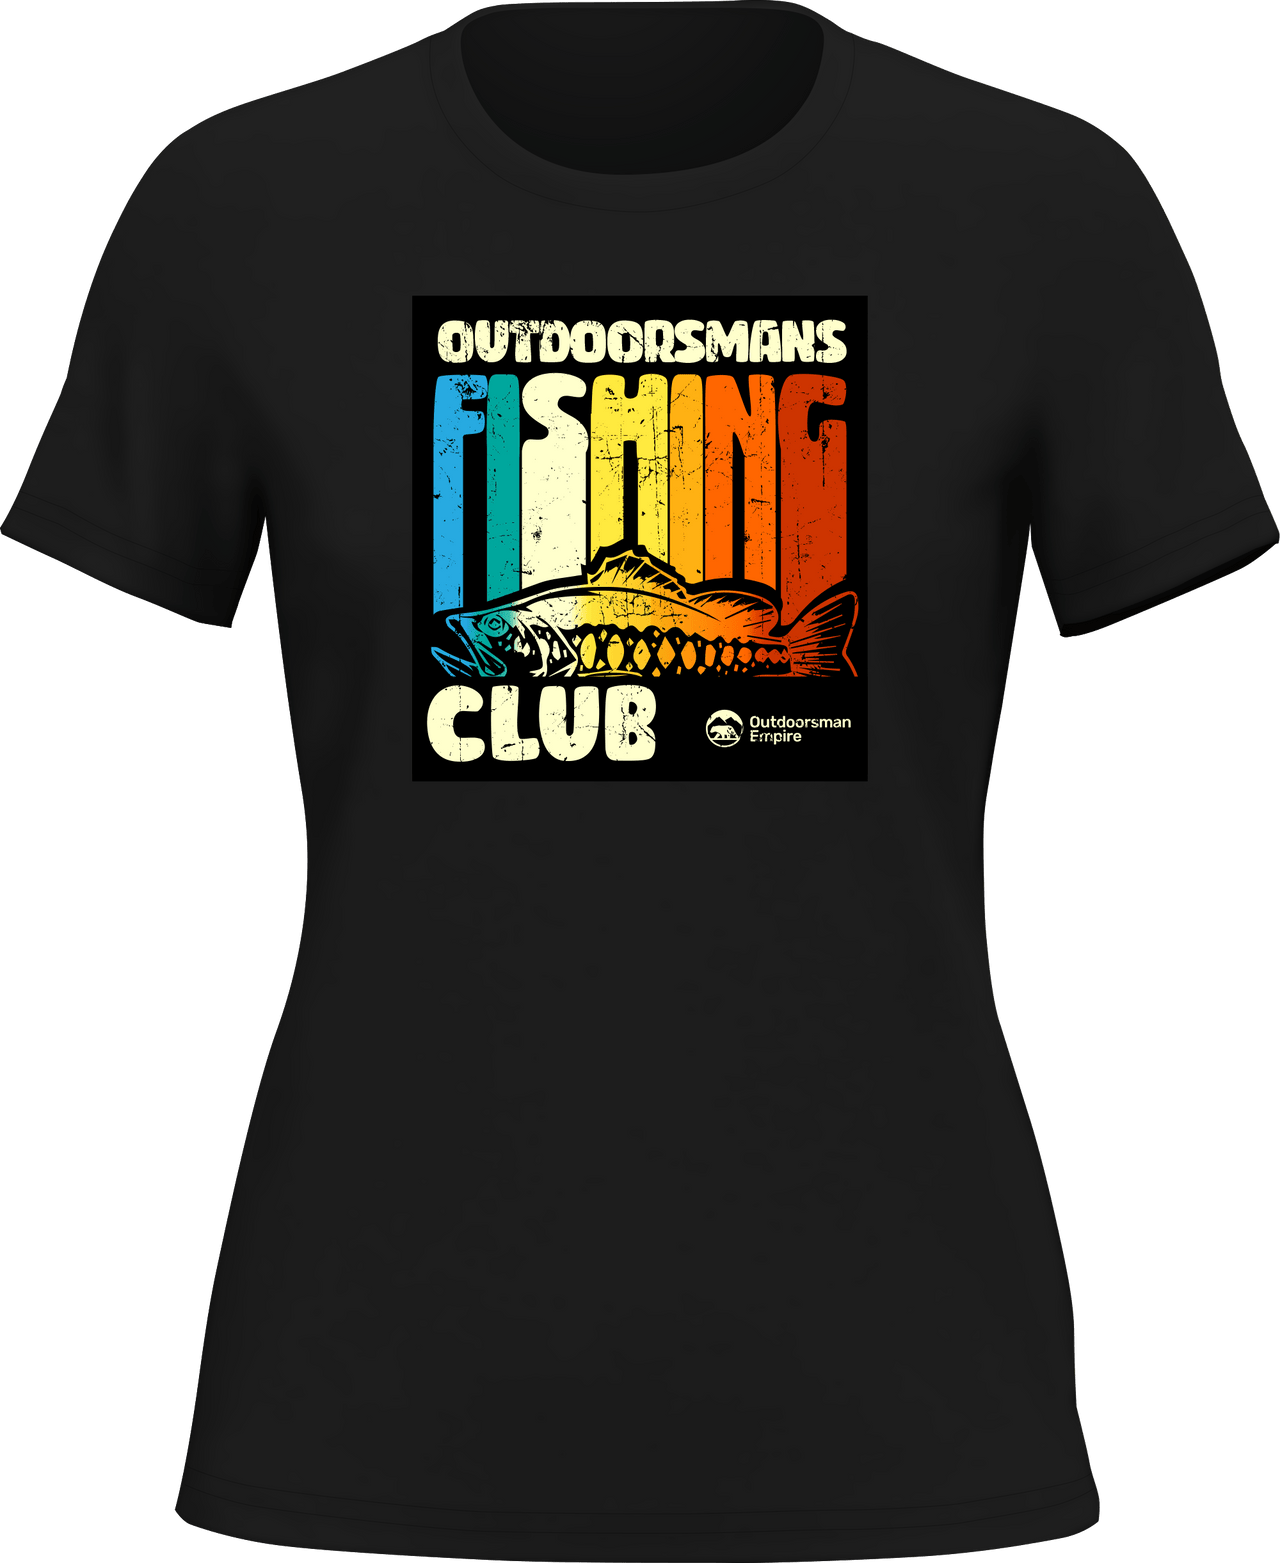 Outdoorsman Fishing Club T-Shirt for Women